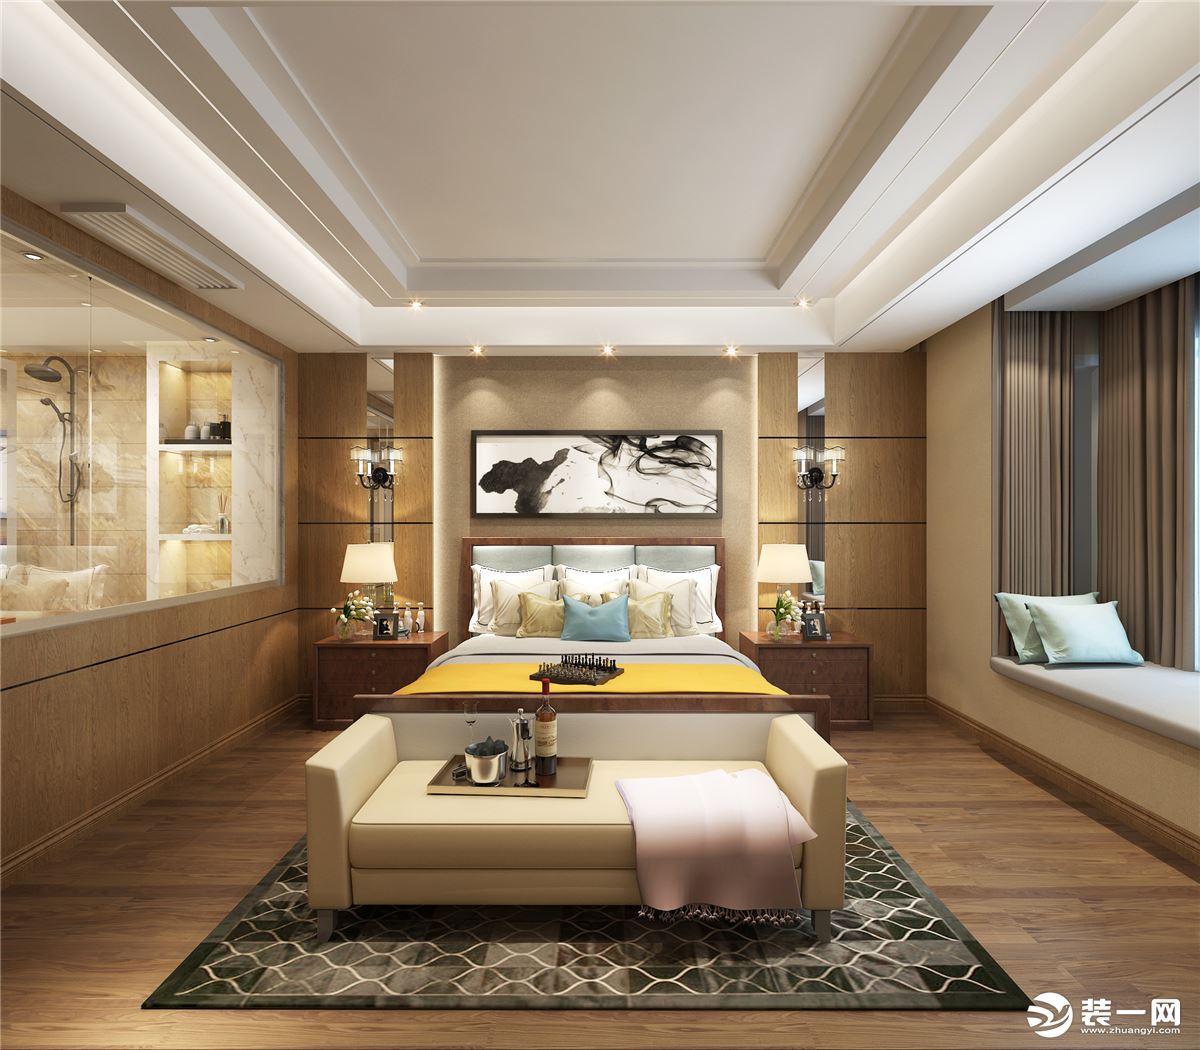 【鲁班装饰】增源航都绿洲复式360平米现代简约风格装修效果图卧室